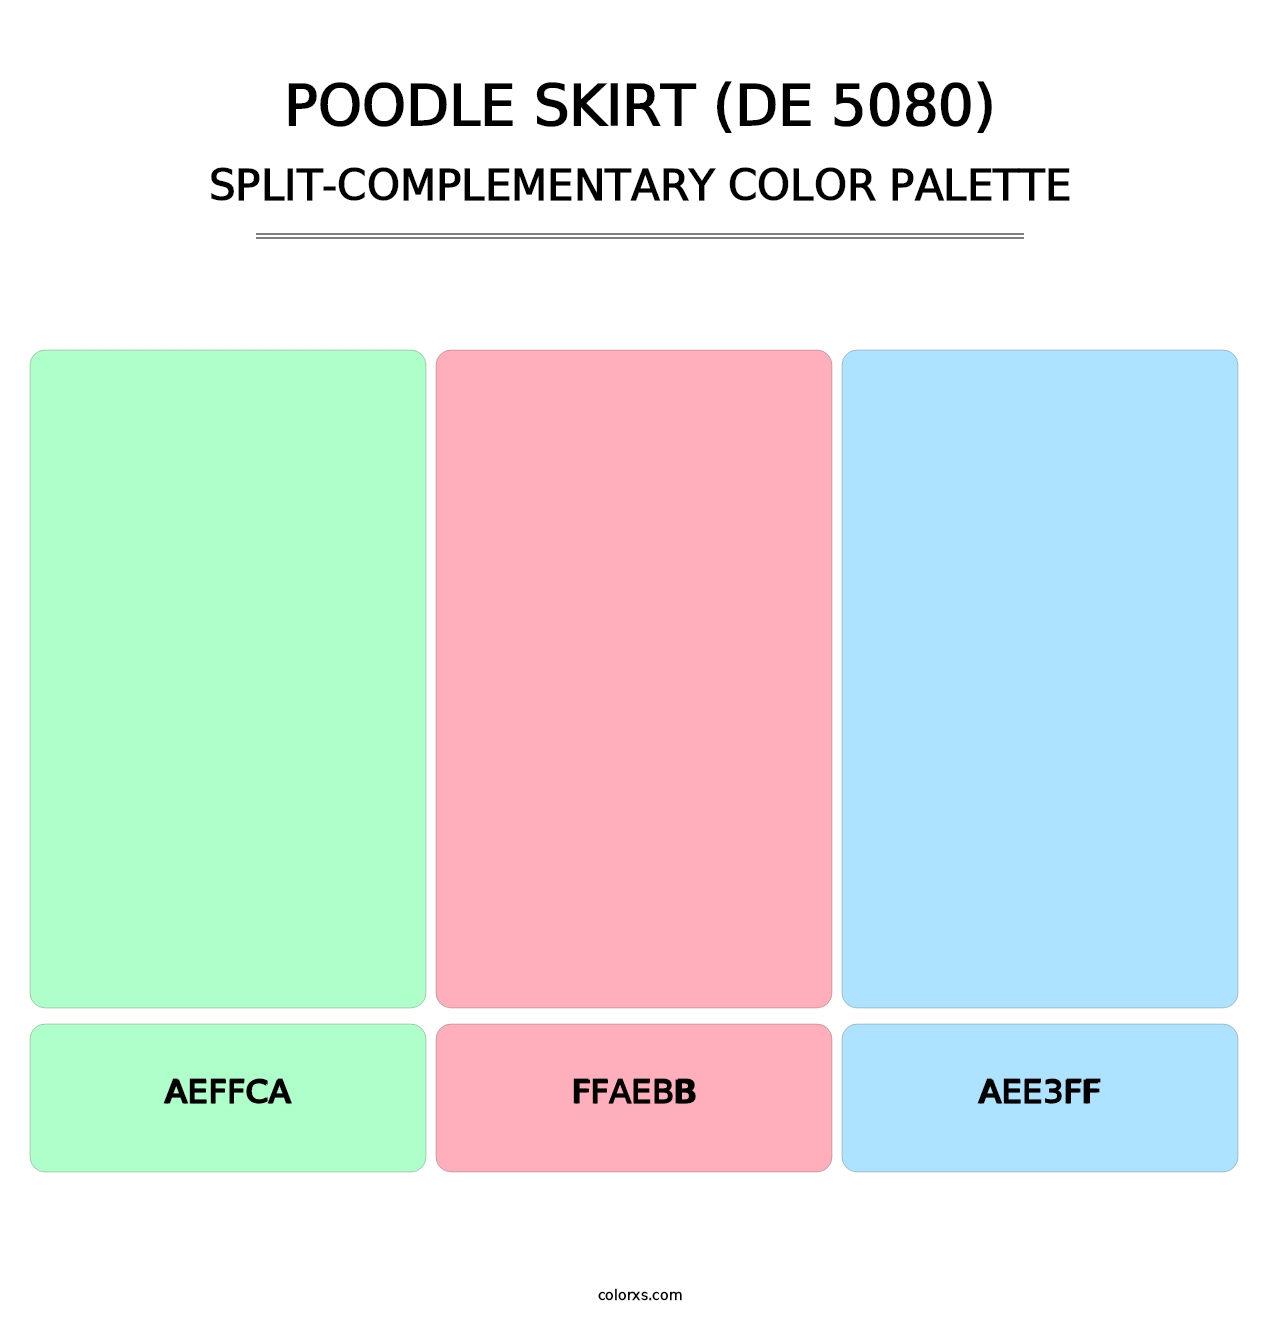 Poodle Skirt (DE 5080) - Split-Complementary Color Palette